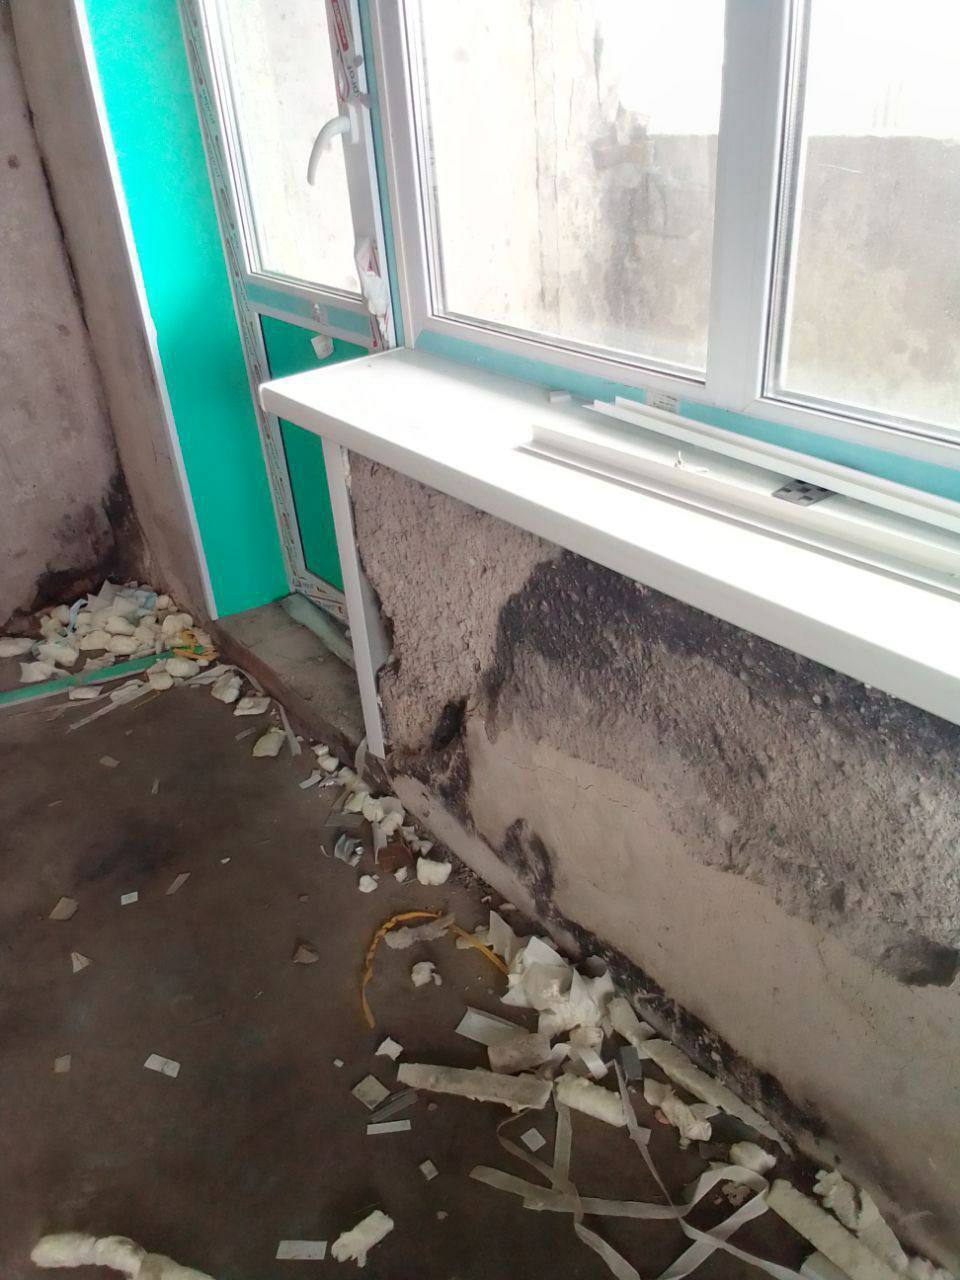 Без работы, с высокими ценами и в разрушенных квартирах: как живет Мариуполь через год после прихода российской армии